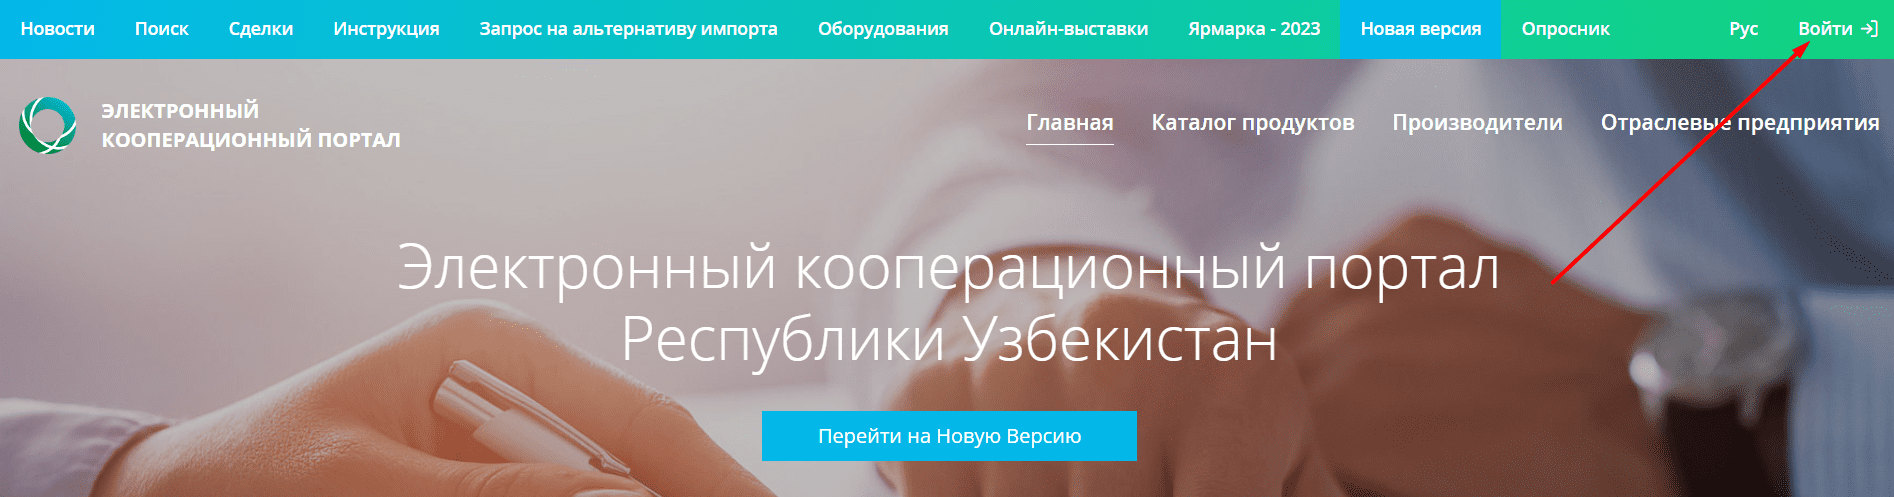 Электронный кооперационный портал Республики Узбекистан (cooperation.uz)